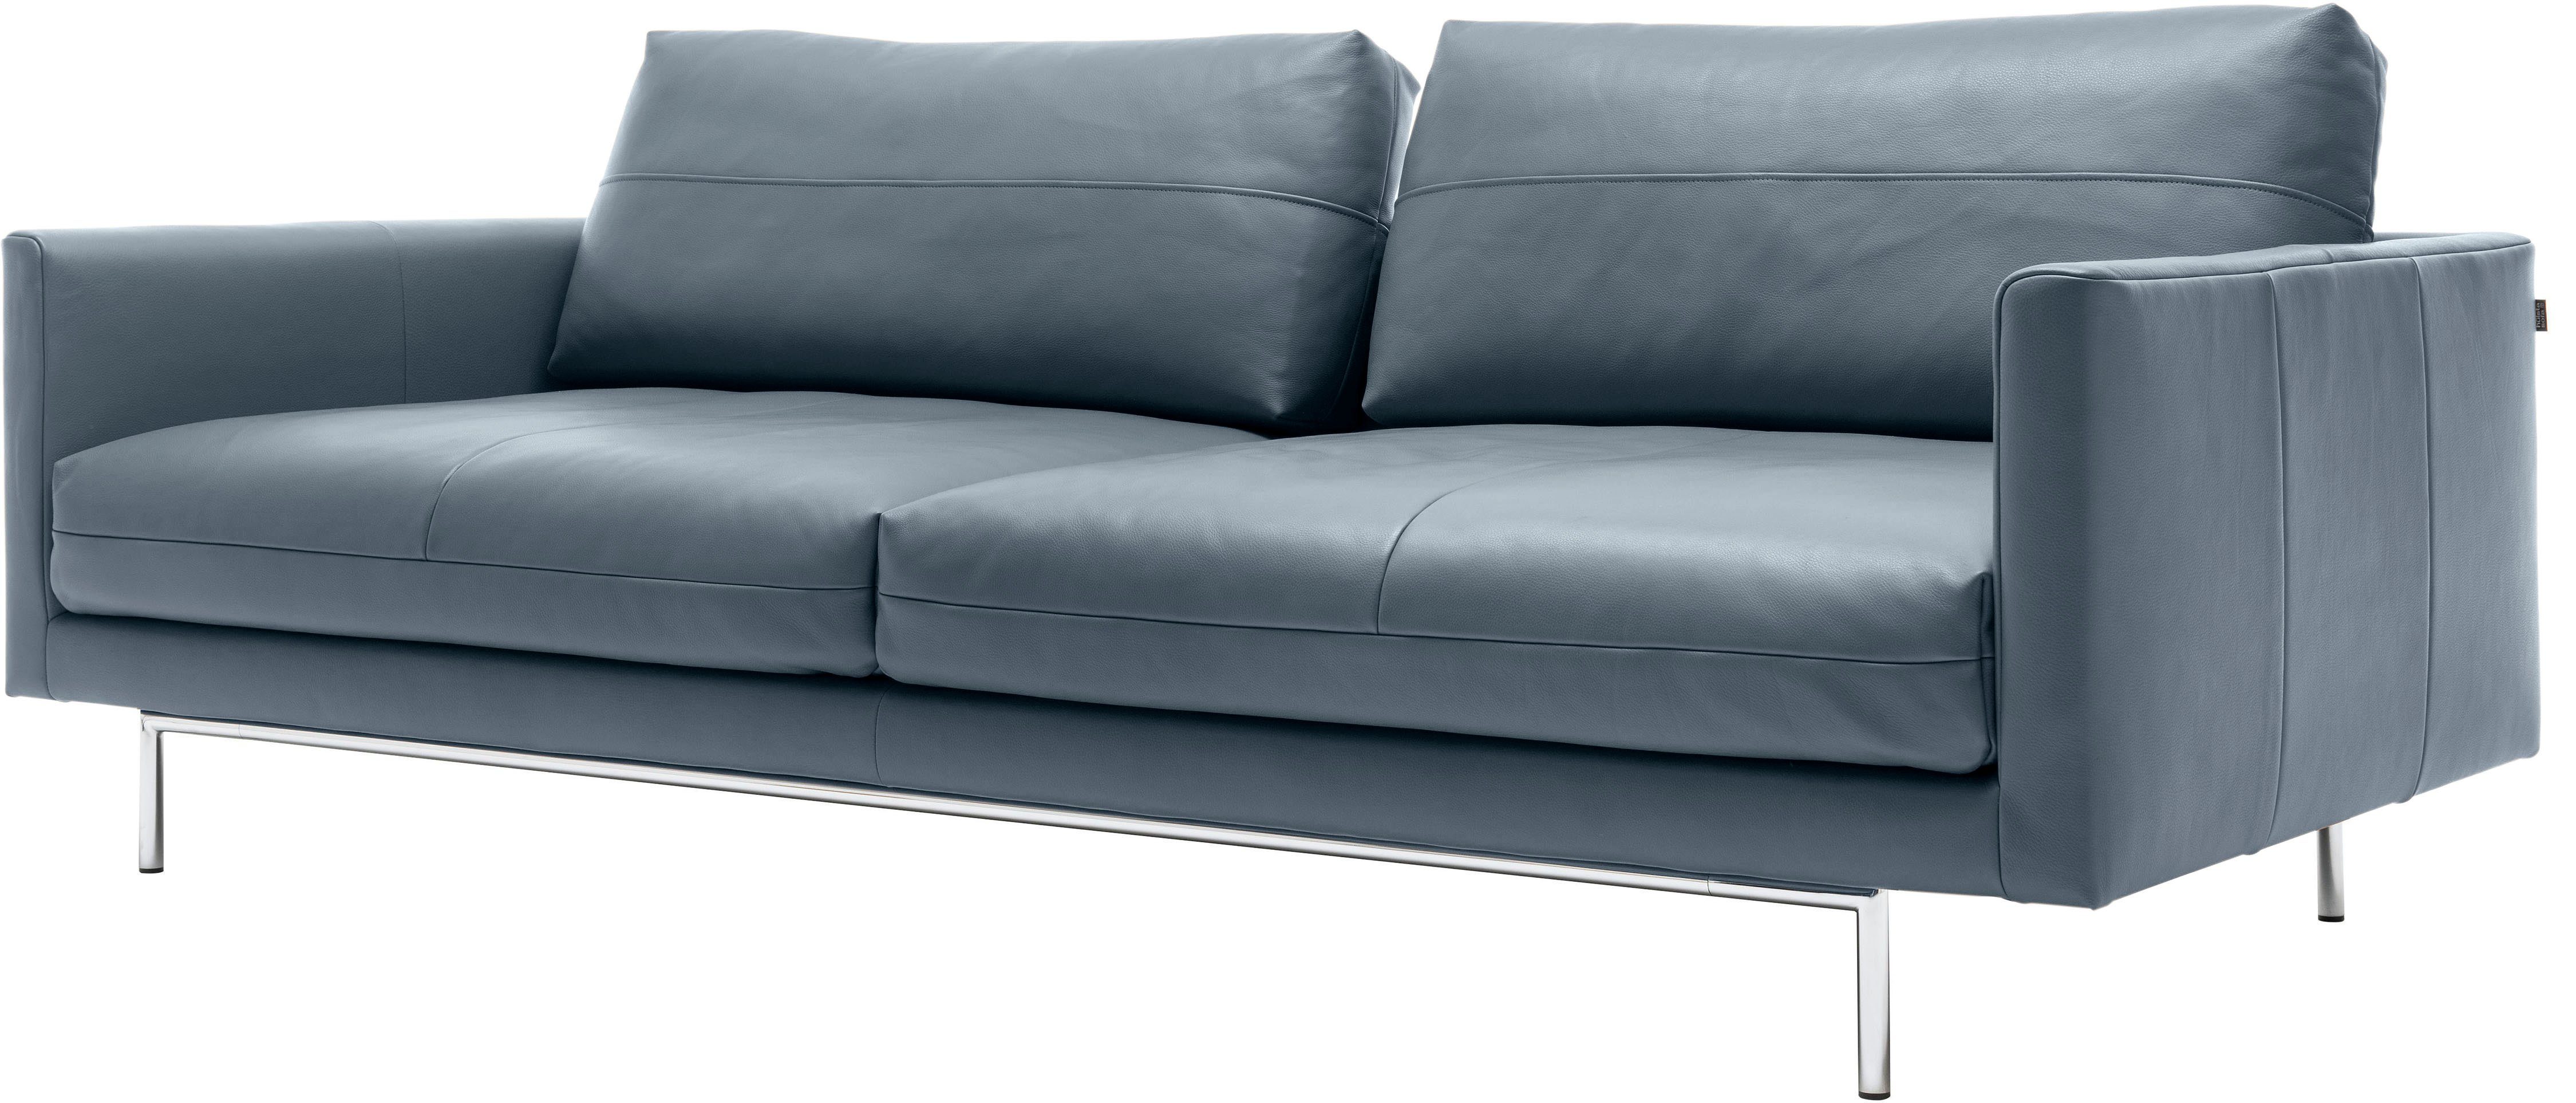 | 3-Sitzer blaugrau sofa hülsta blaugrau